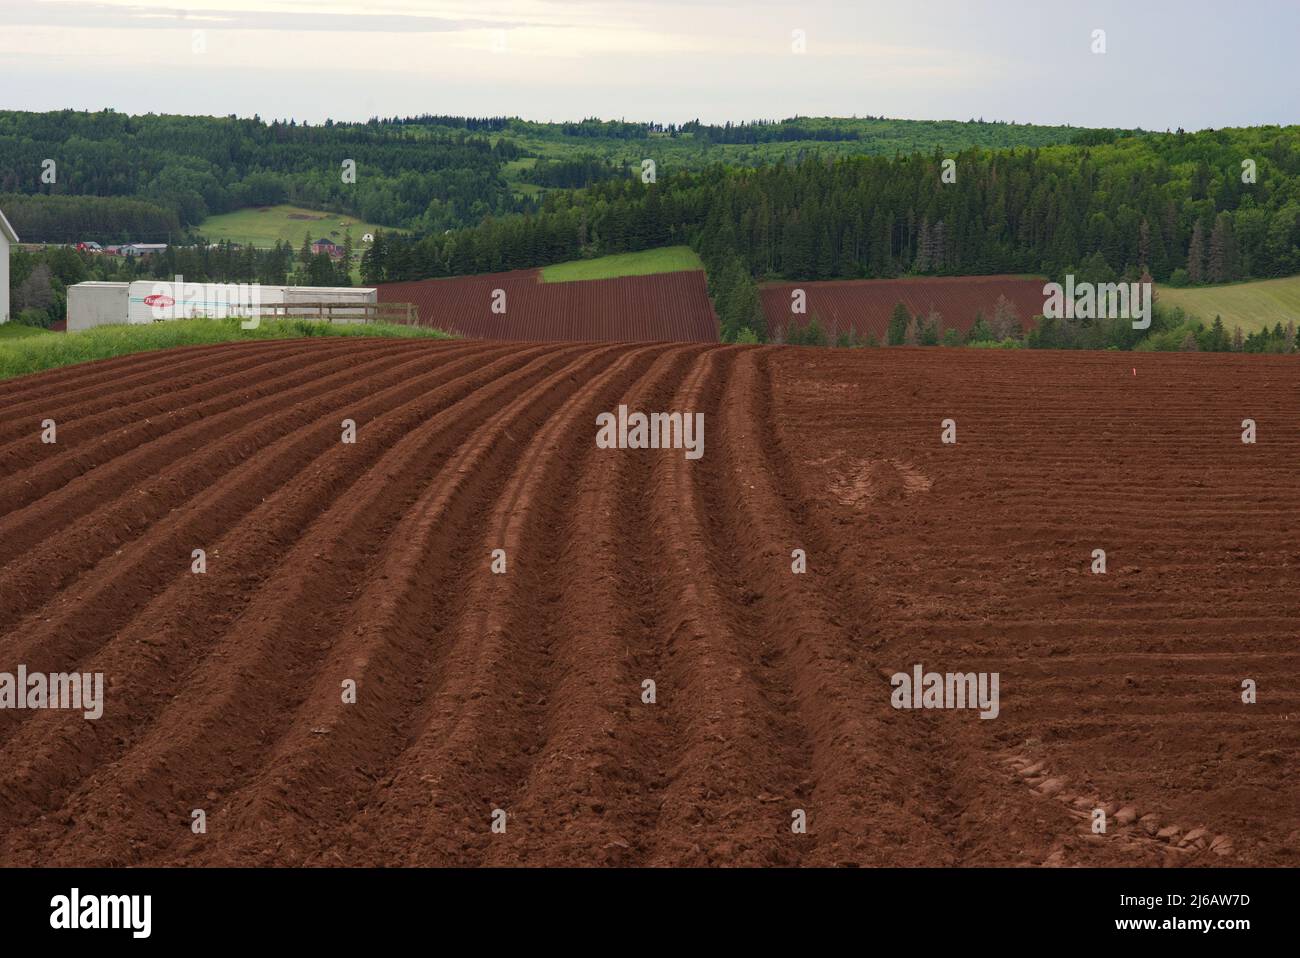 Le sol brun rougeâtre de l'Île-du-Prince-Édouard est exposé dans ce champ récemment labouré. Banque D'Images